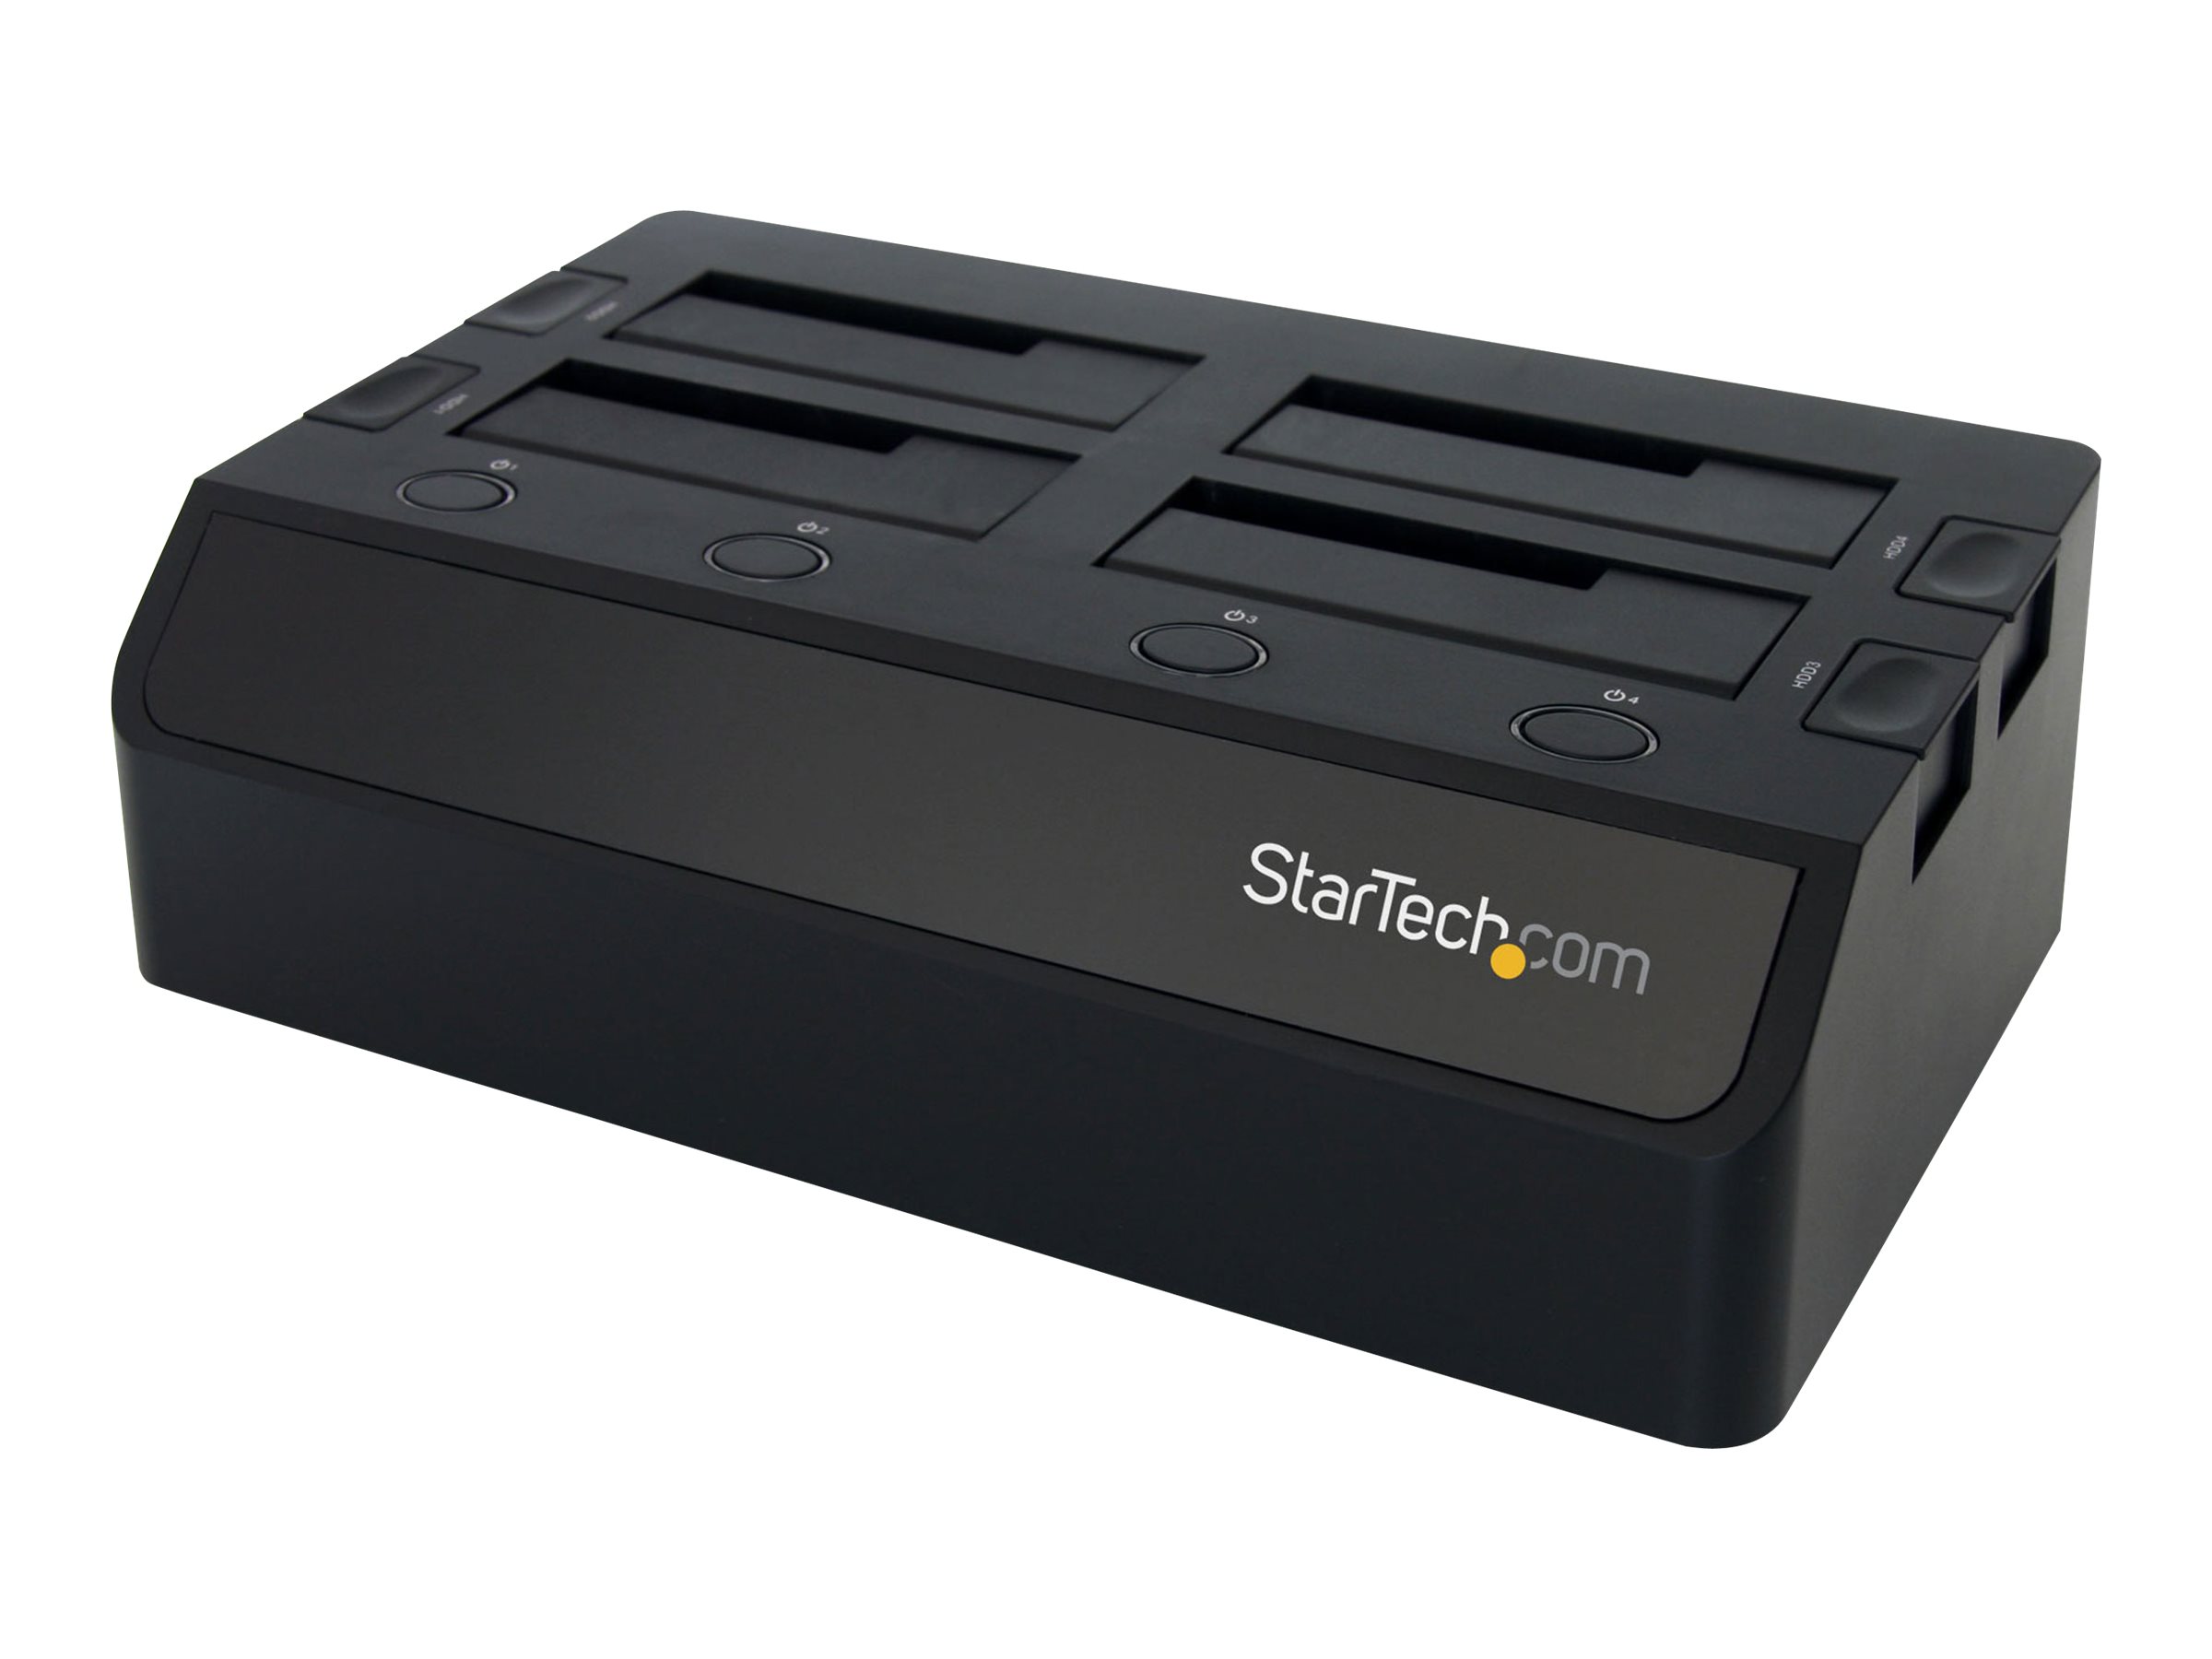 StarTech.com USB 3.0 4 Bay 2,5 / 3,5 Zoll SATA III Festplatten Dockingstation mit UASP und zwei Lüftern - 6,4 / 8,9 cm HDD / SSD Dock - Speichergehäuse - 4 Schächte (SATA-600)